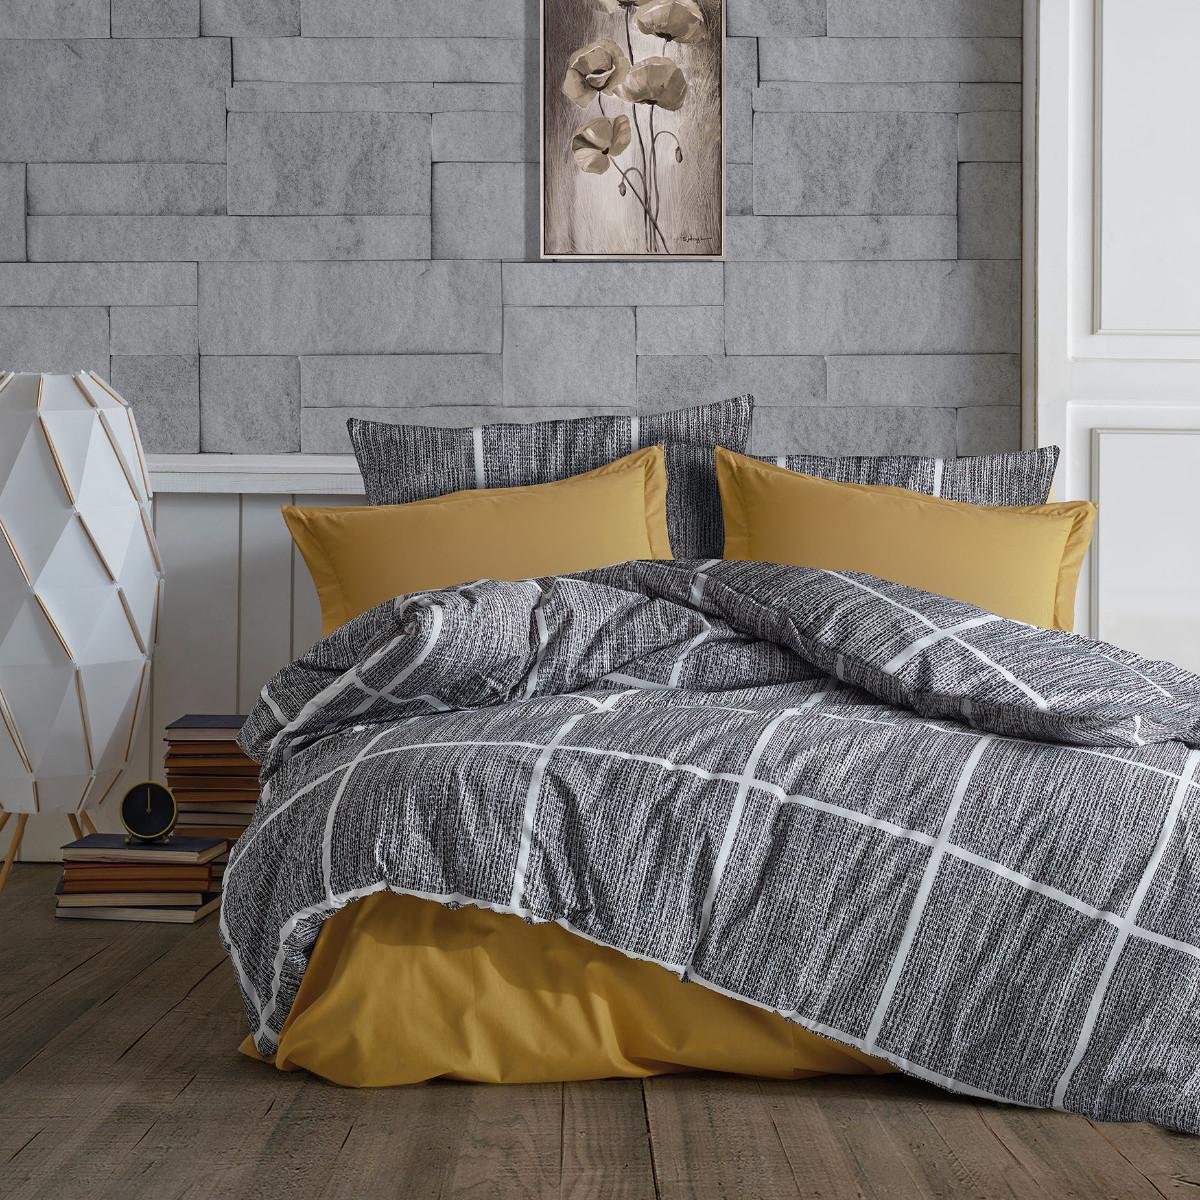 Selected image for Mille Notti Silver Square Pamučna posteljina za bračni ležaj, 200x220 cm, Sivo-plava